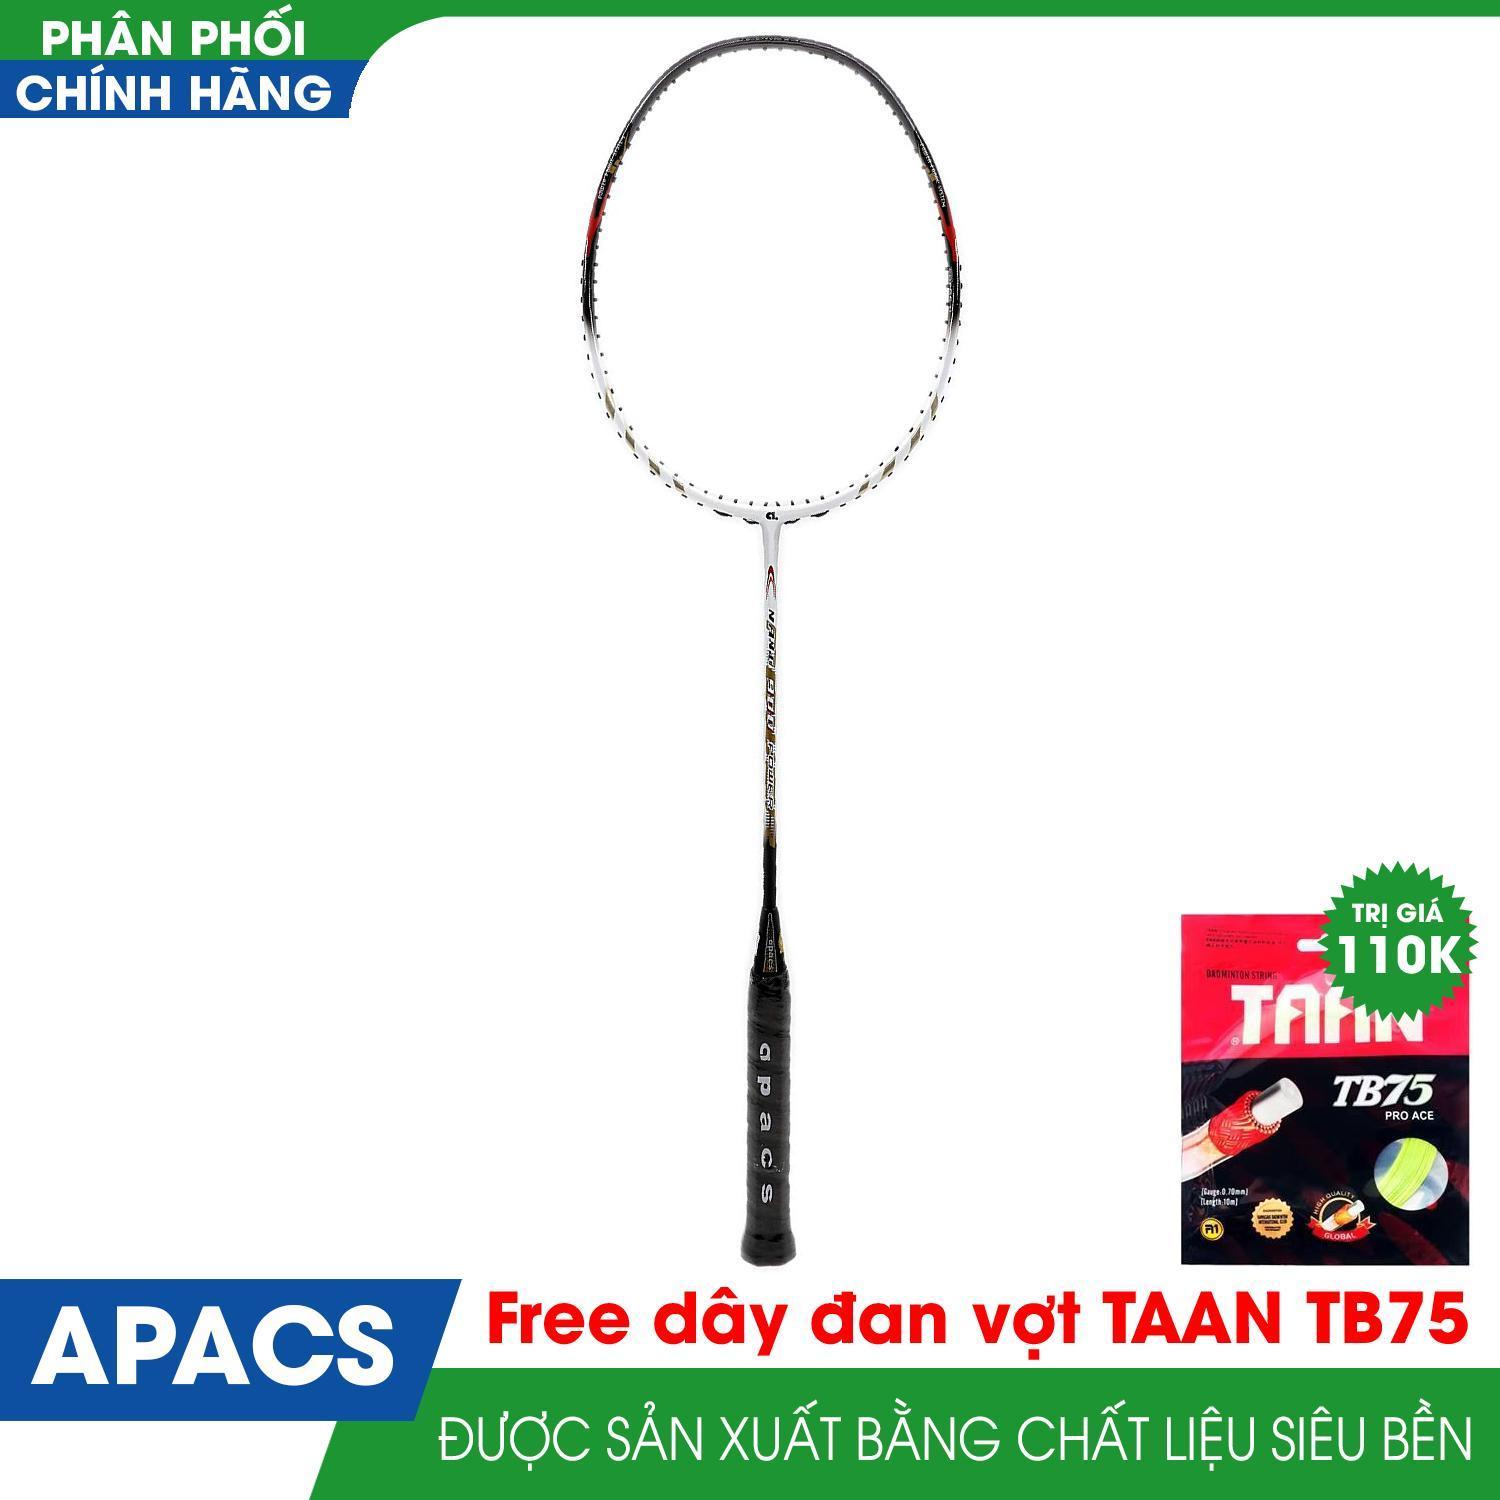 Vợt cầu lông APACS NANO 900 Power tặng kèm dây đan vợt